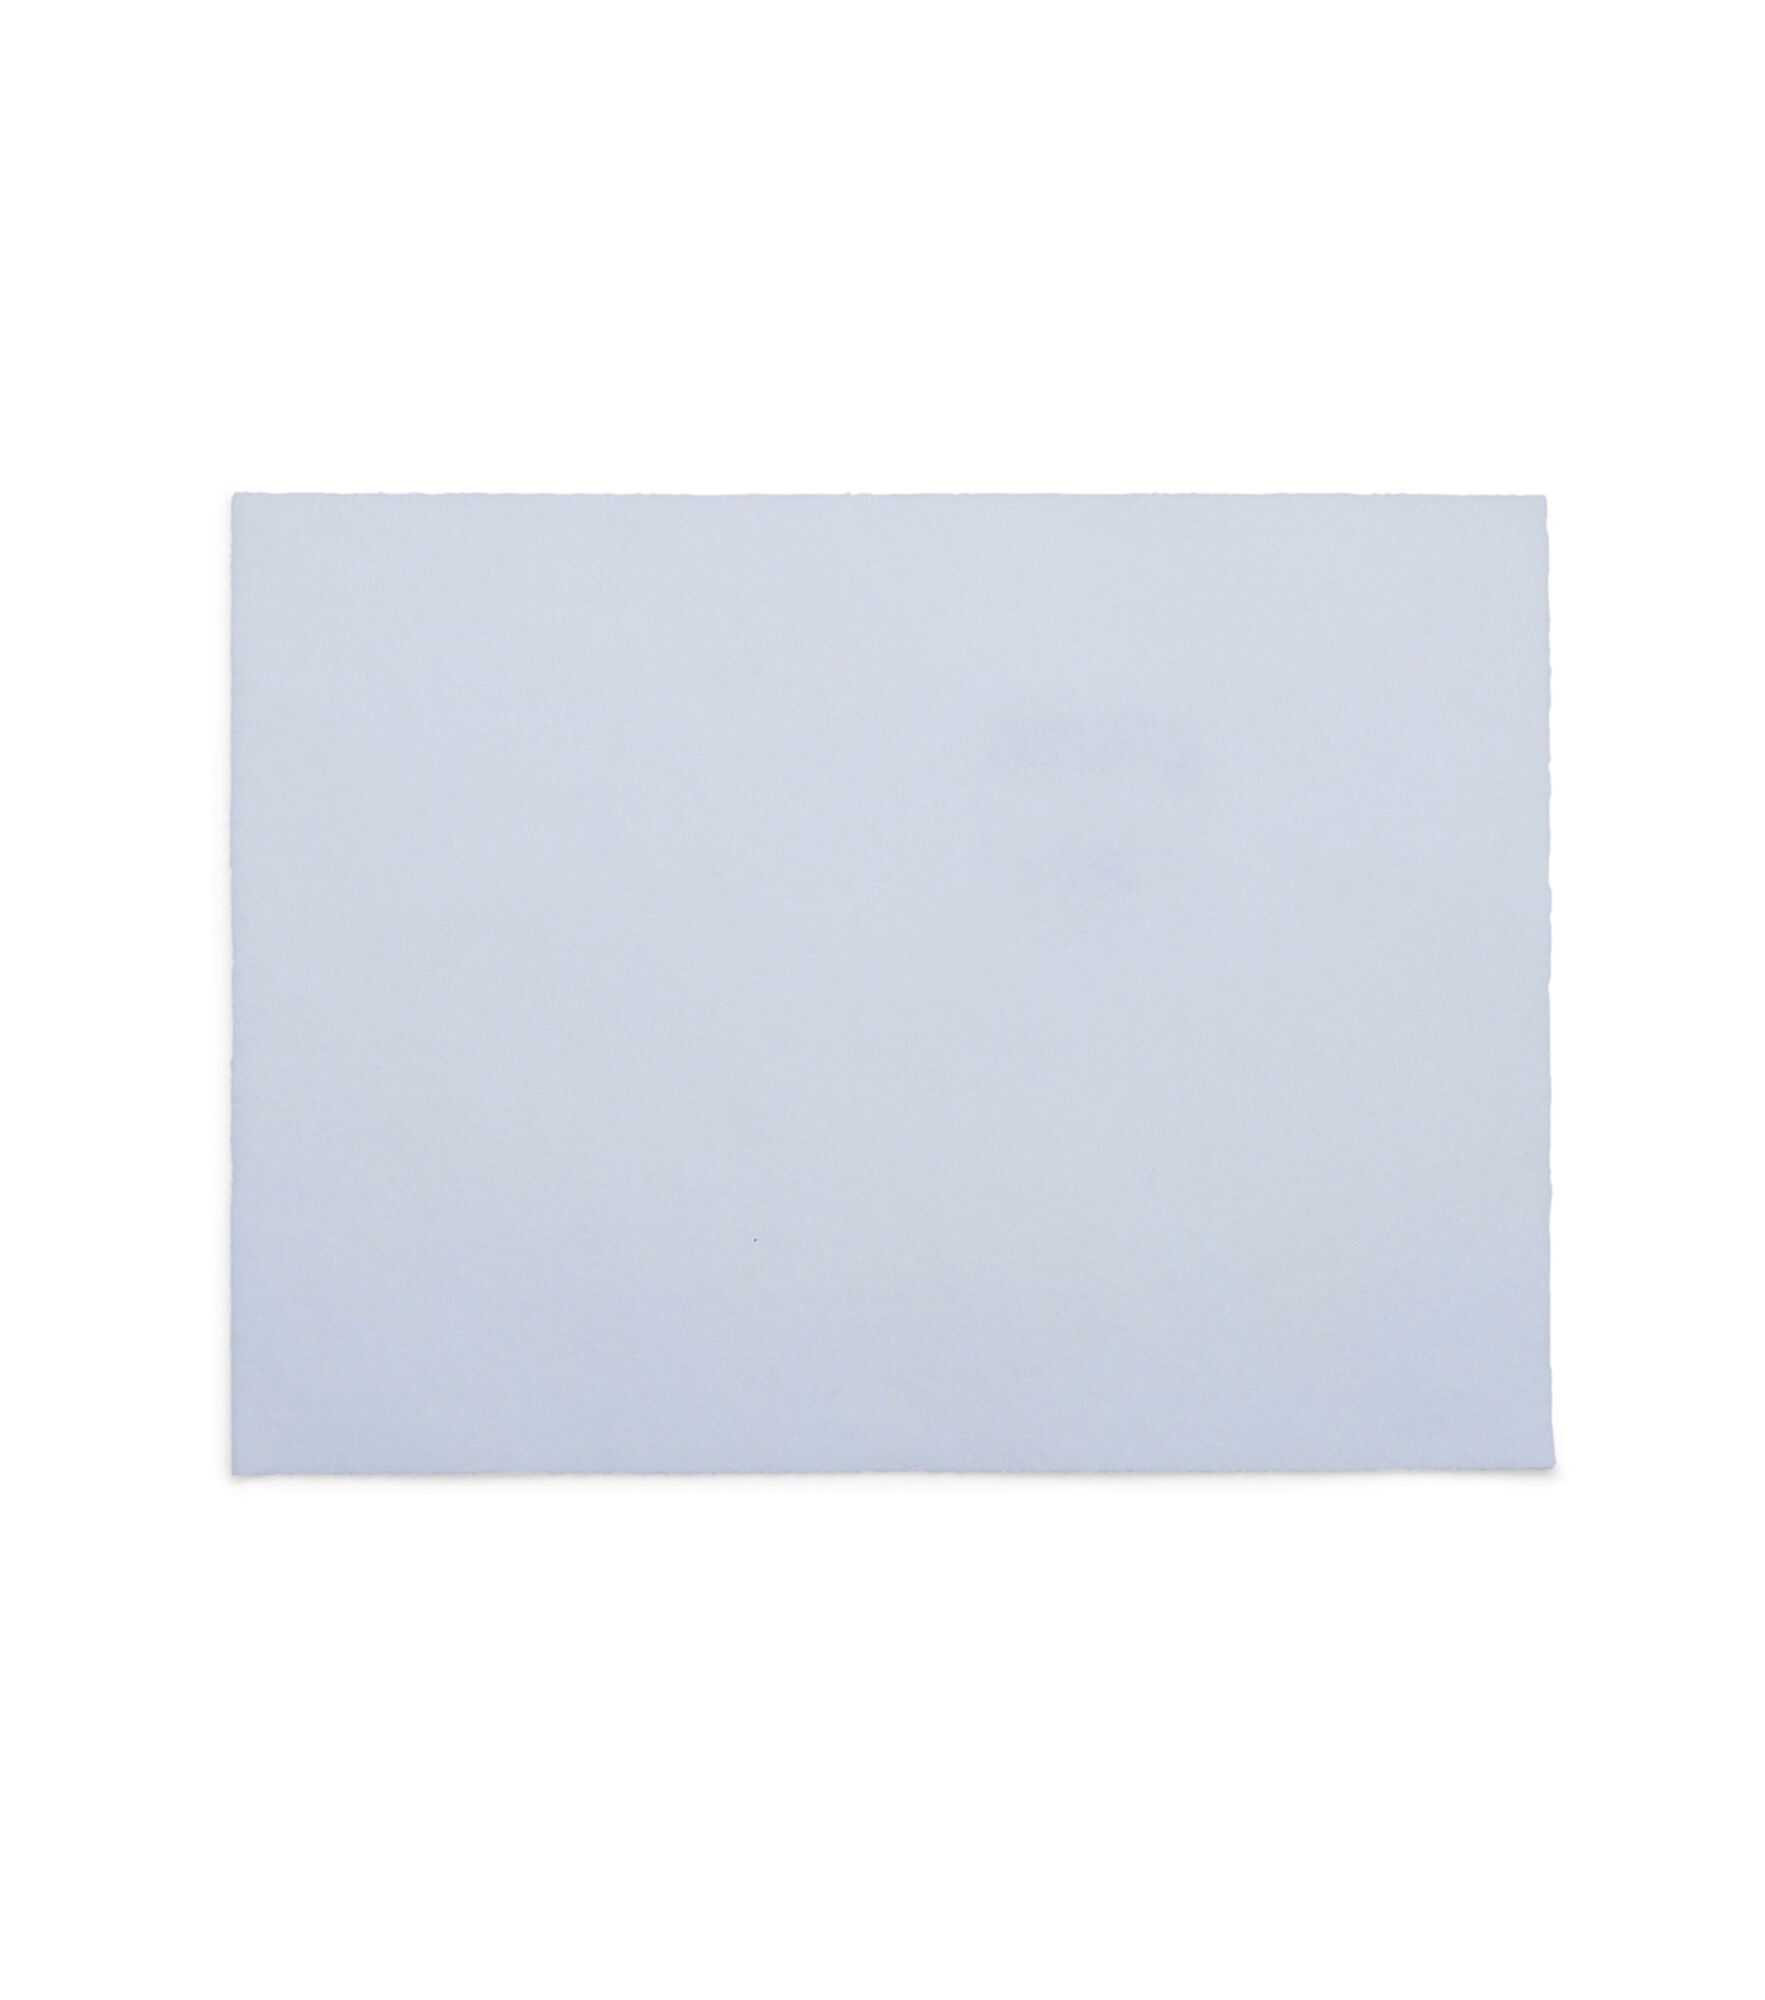 Adhesive white felt sheet